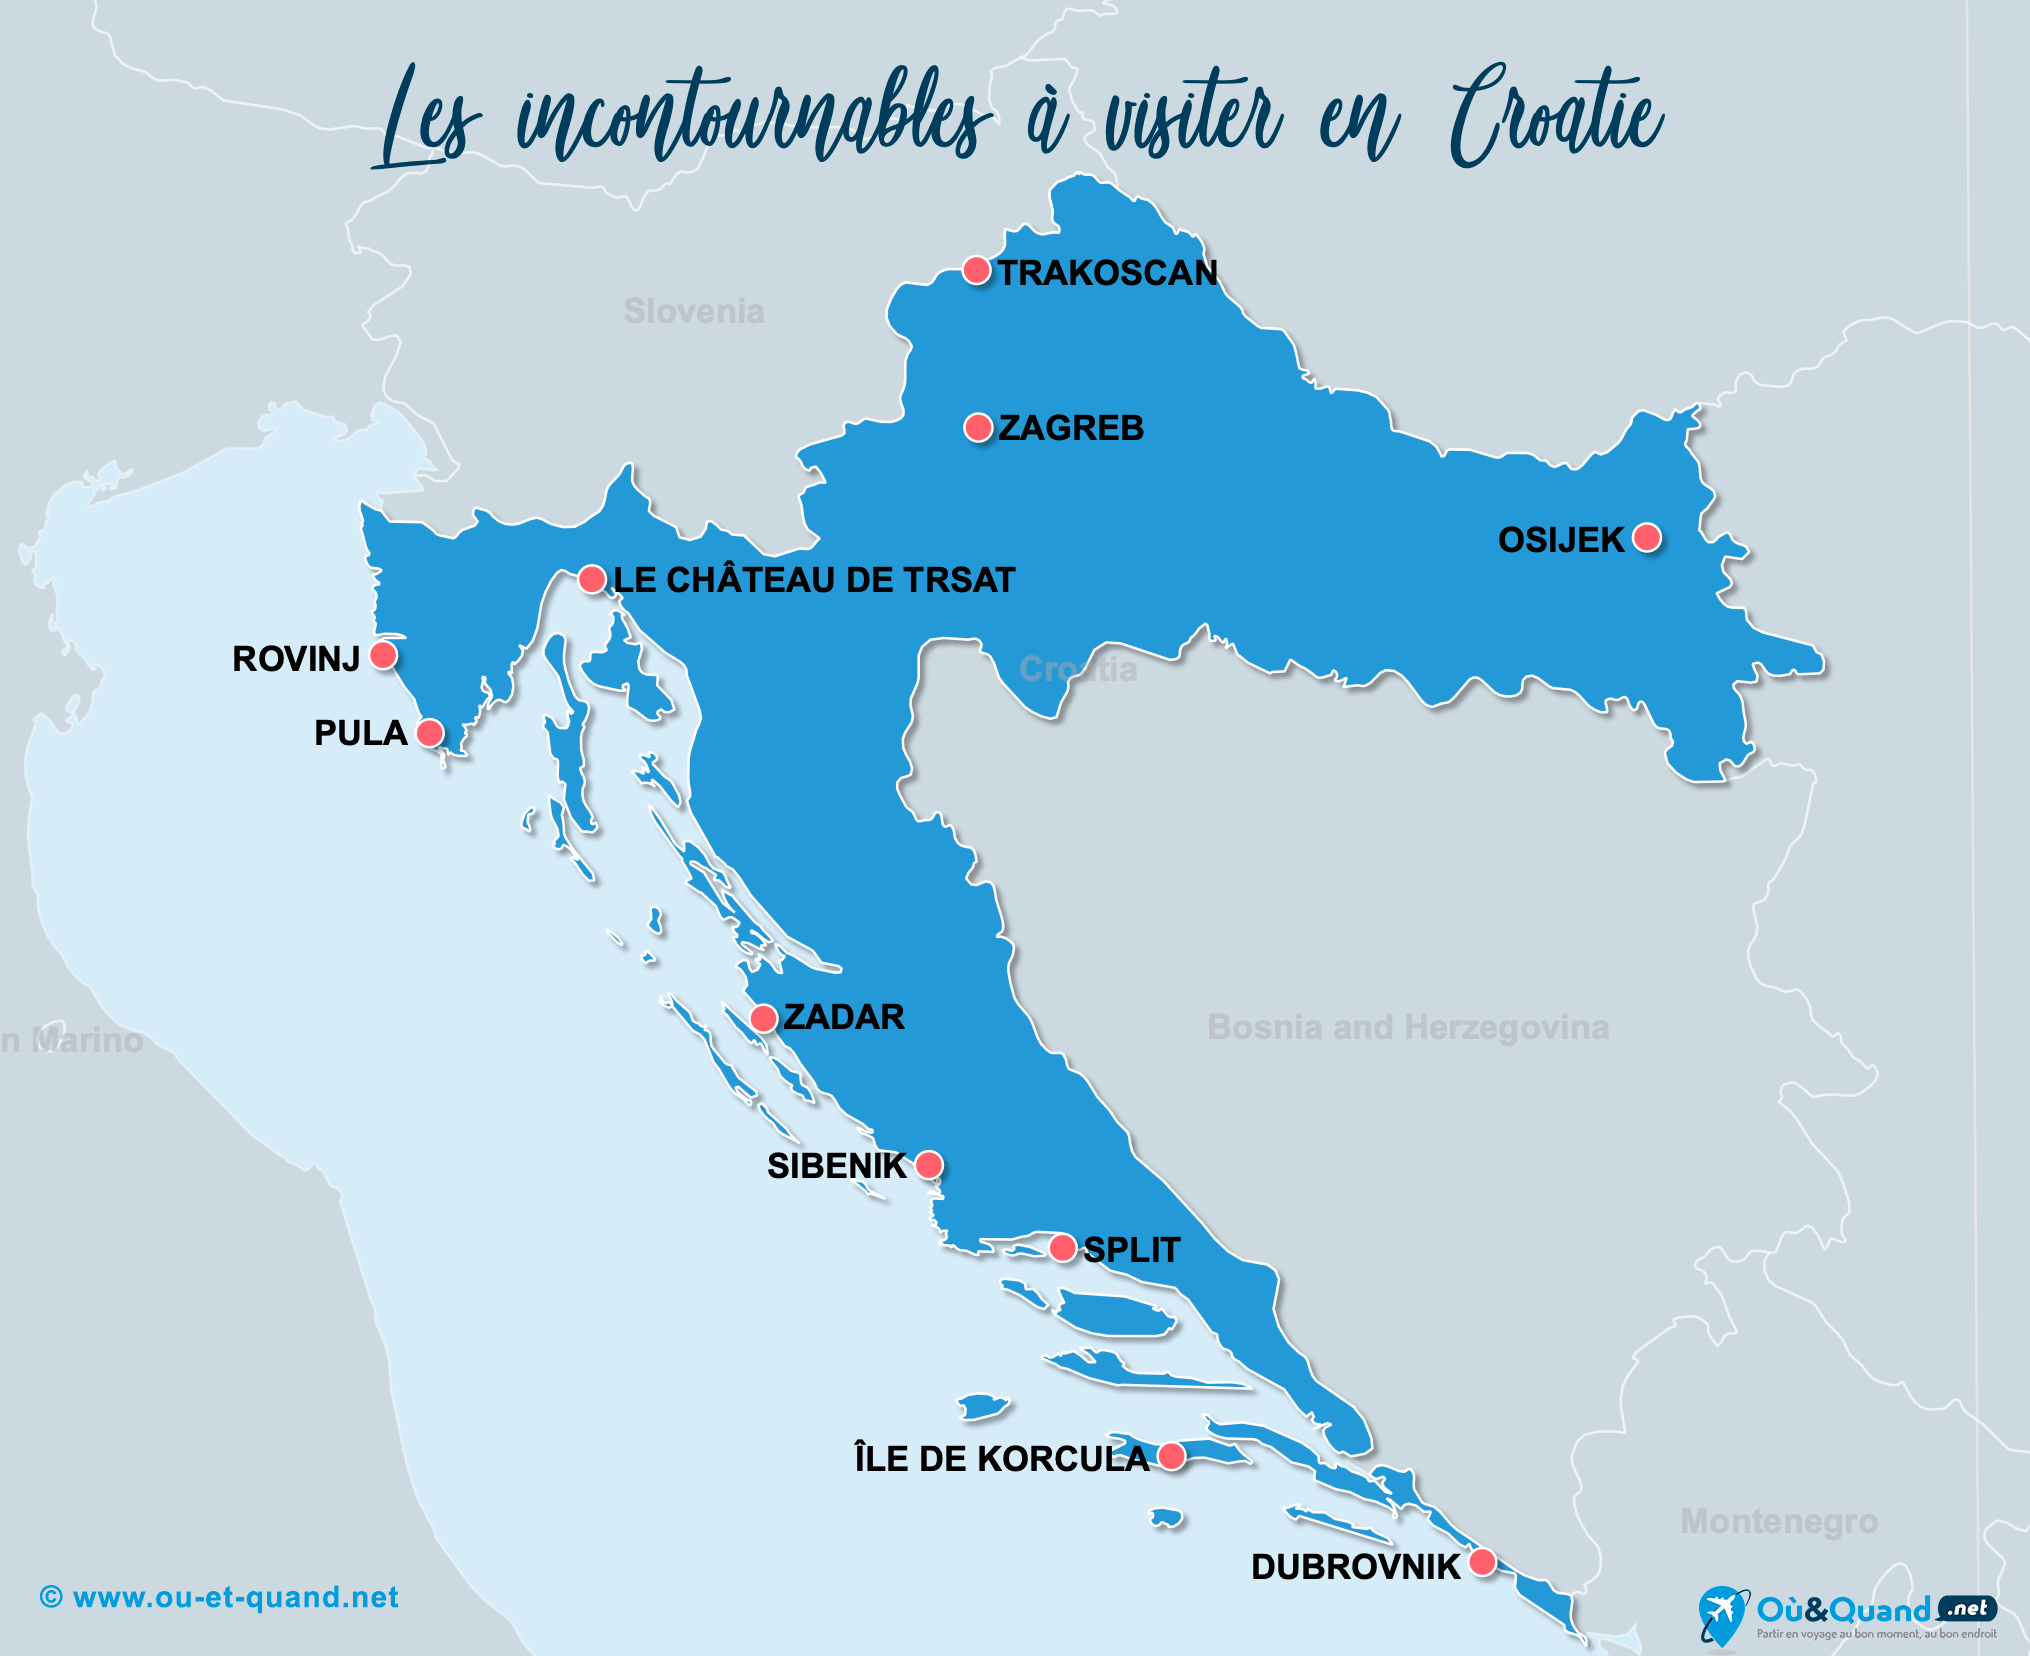 25 lieux incontournables à voir en Croatie